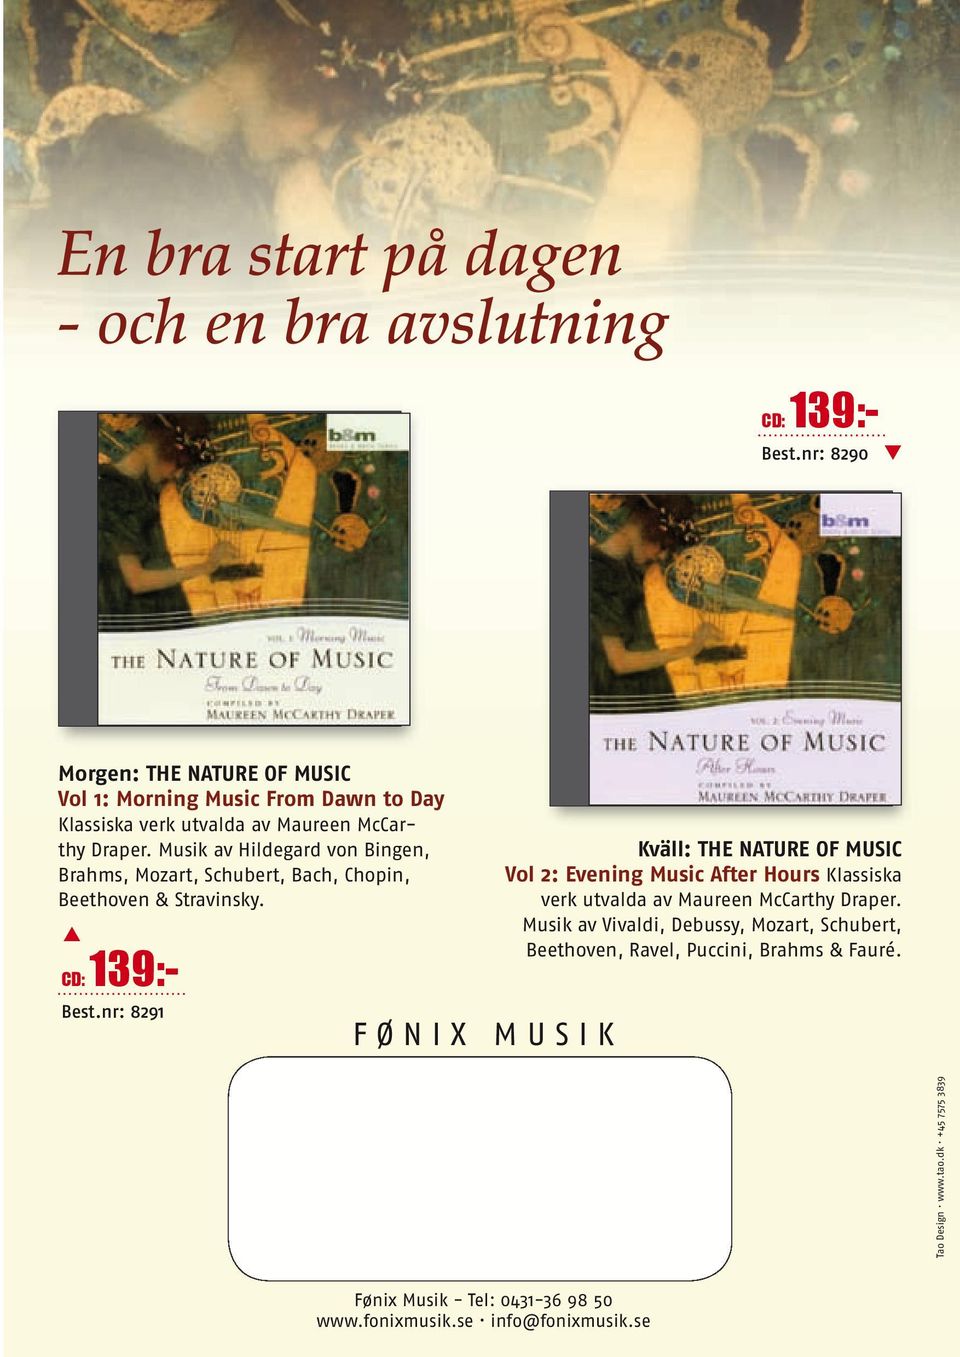 Musik av Hildegard von Bingen, Brahms, Mozart, Schubert, Bach, Chopin, Beethoven & Stravinsky. CD: 139:- Best.